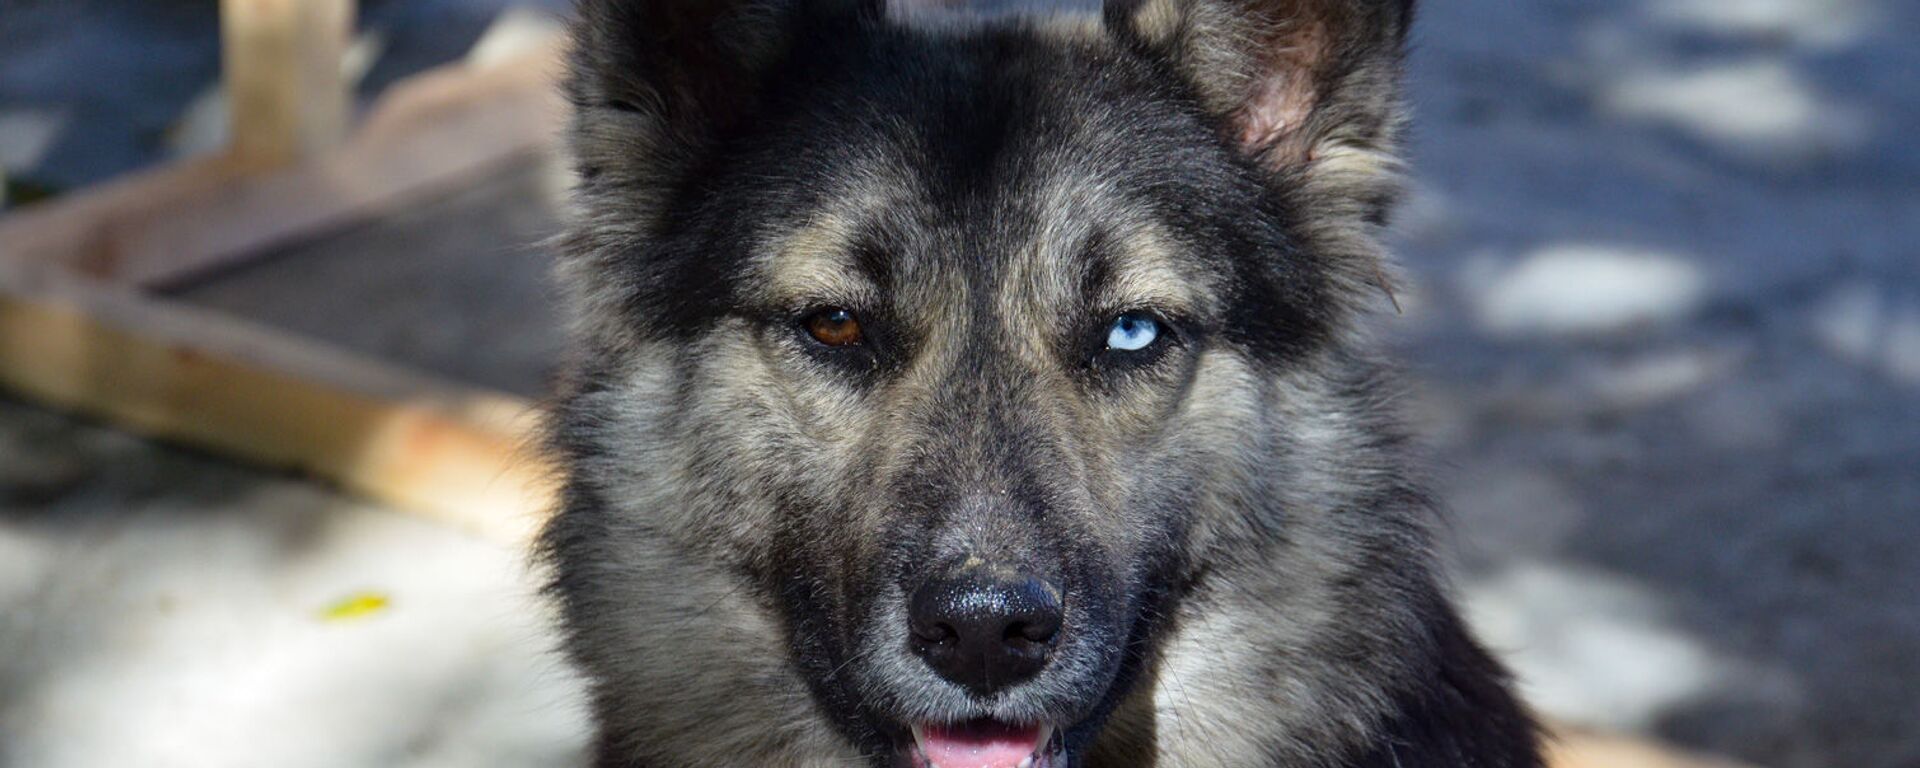 Собака с разным цветом глаз  - Sputnik Абхазия, 1920, 30.07.2021